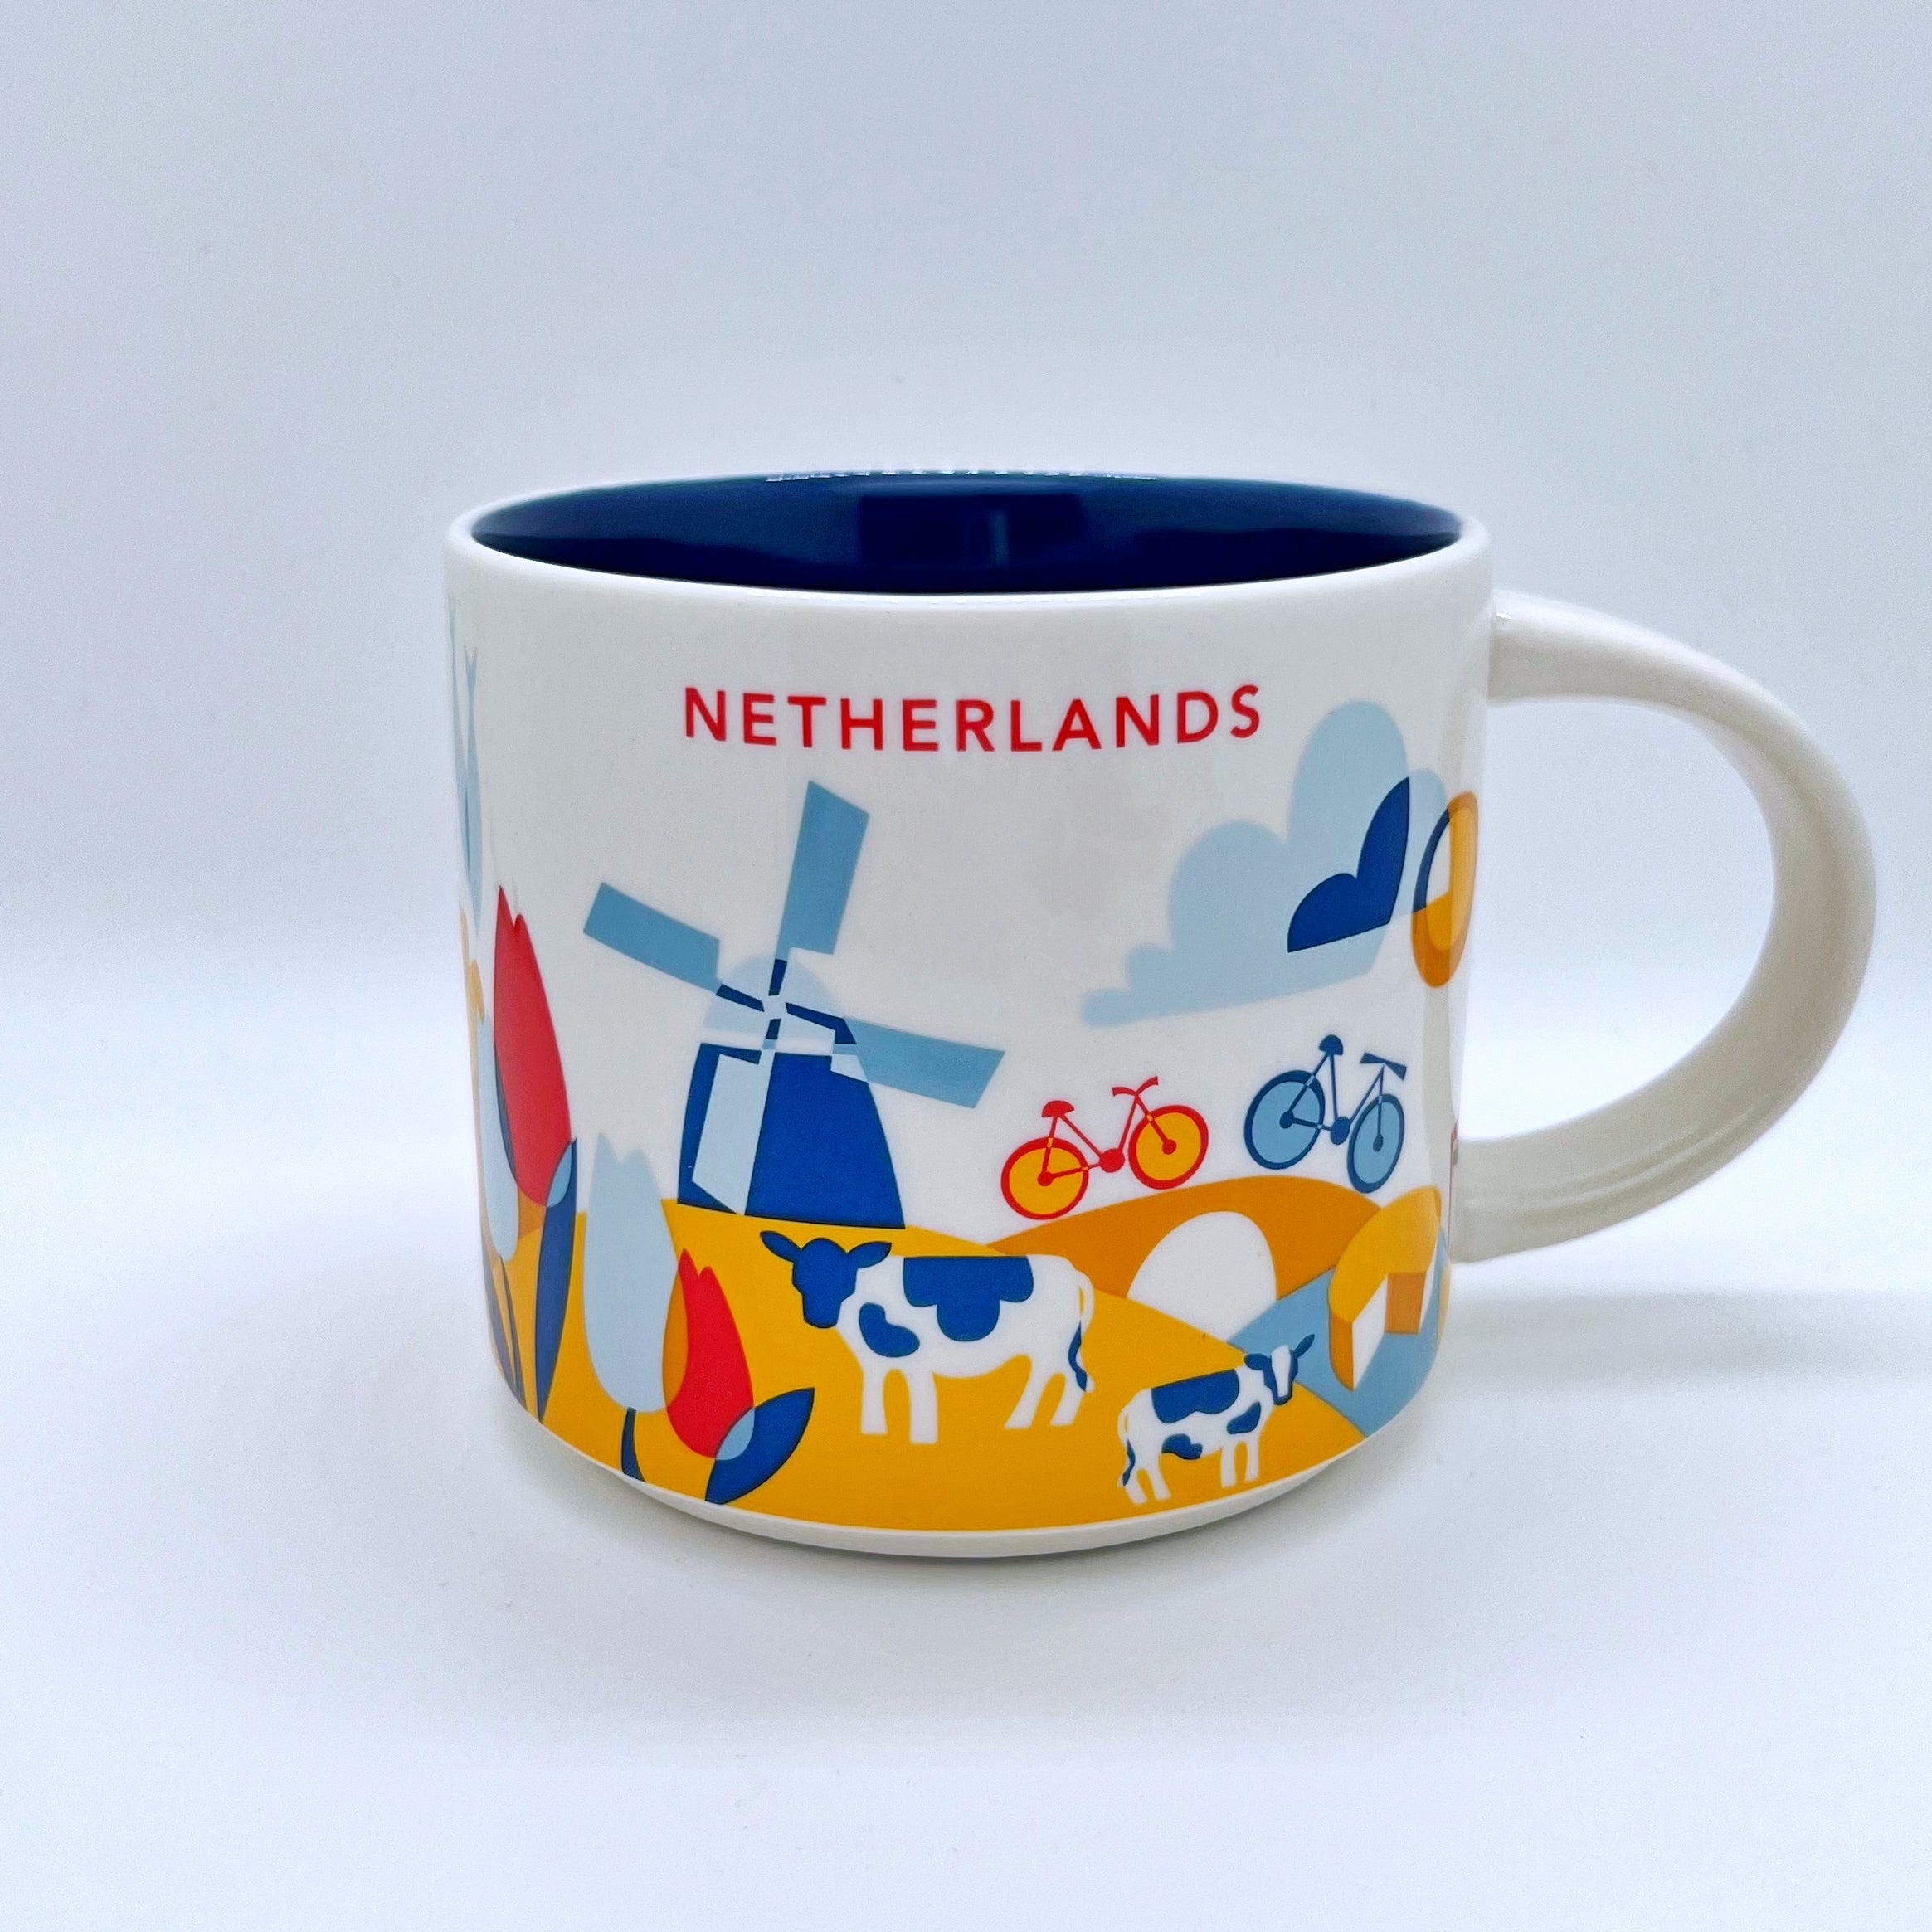 Kaffee Cappuccino oder Tee Tasse von Starbucks mit gemalten Bildern aus den Niederlanden